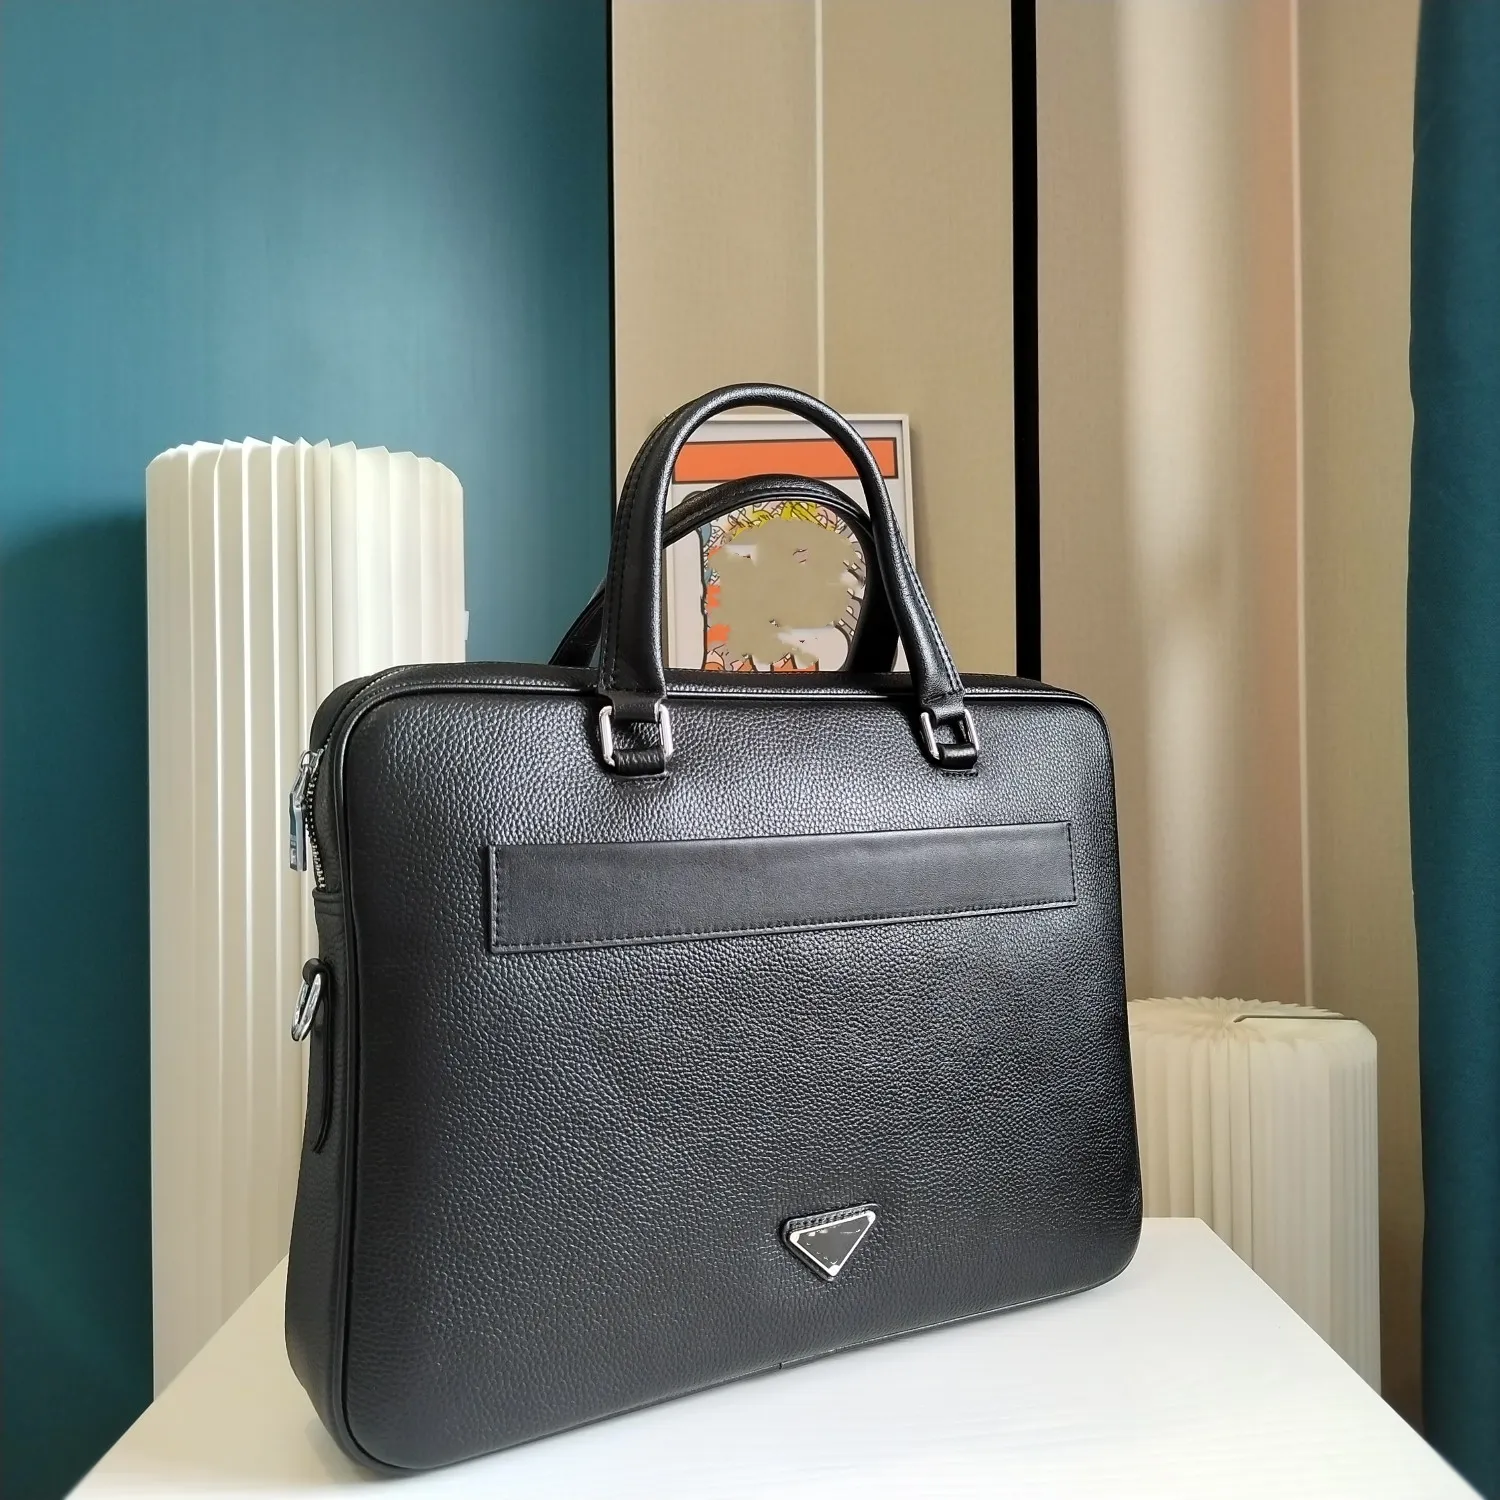 P230-1 Version élevée Mencase Men's Men's Black Handbag How Hide Material Top Mardware Accessories Fashion Lot-Key Luxury Fashion Crossbody peut être taille 38x28x7